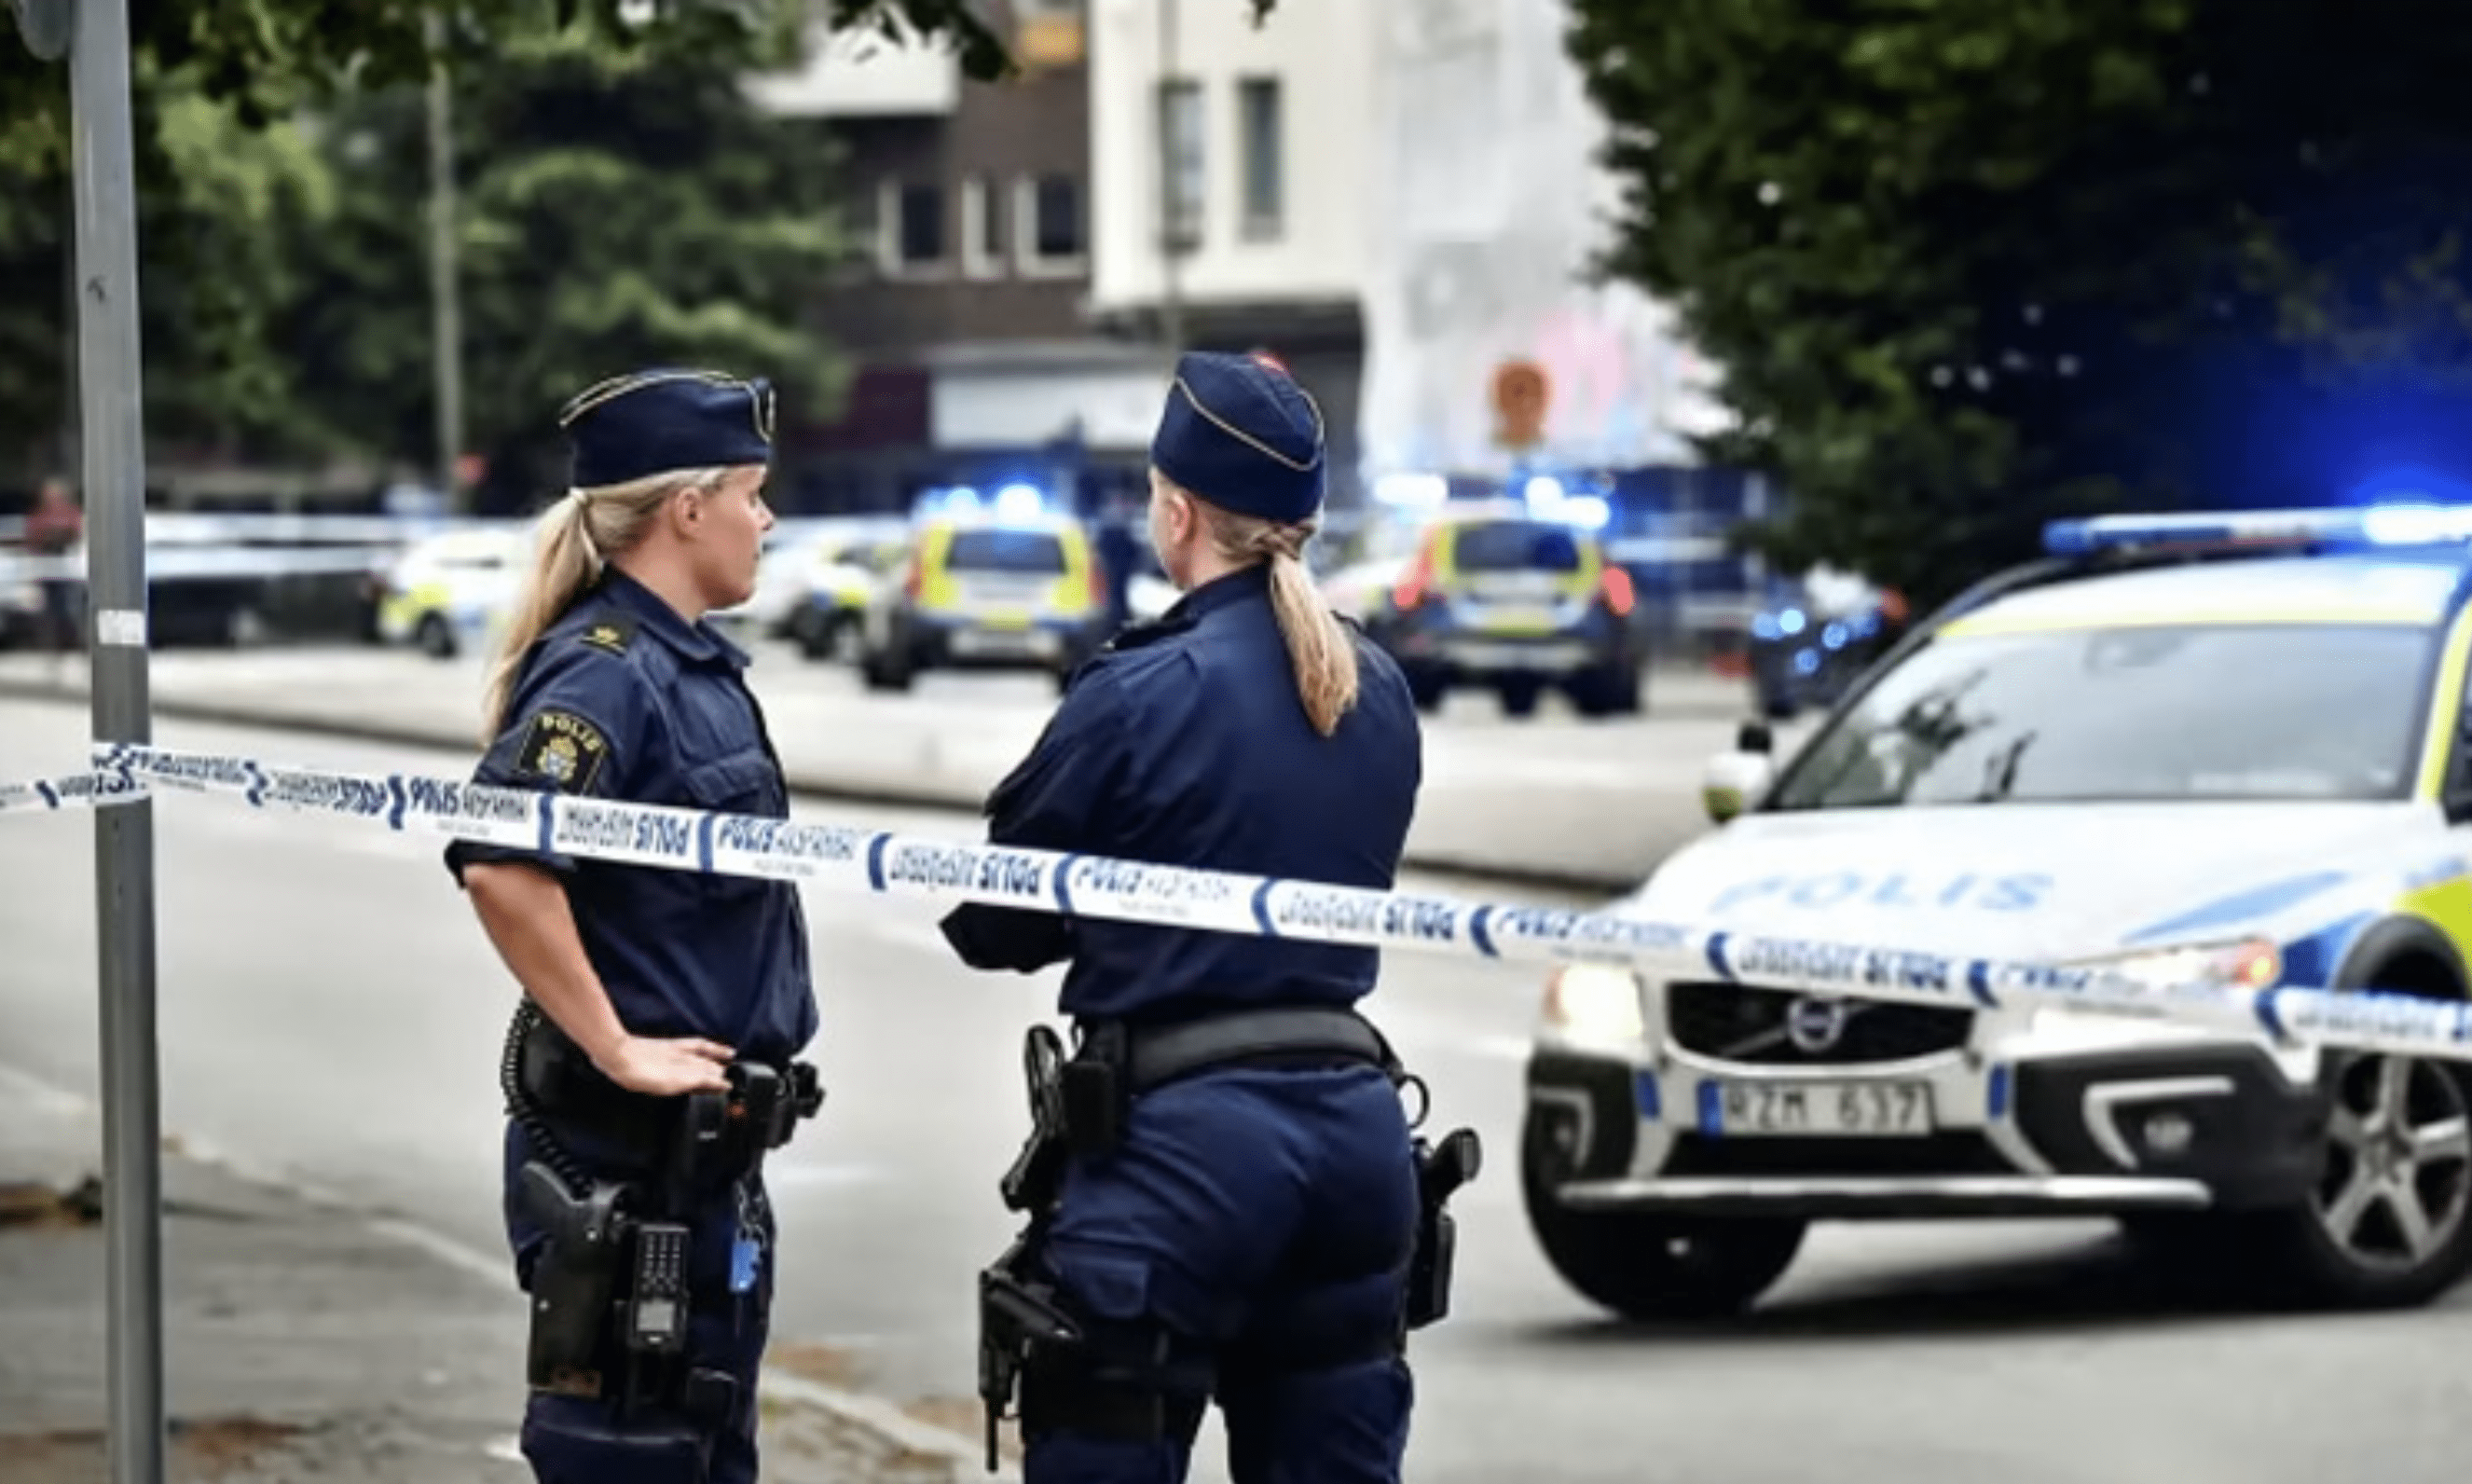 پلیس سوئد : کیف کشف شده در محل کنسرت ابی در استکهلم حاوی مواد منفجره بود